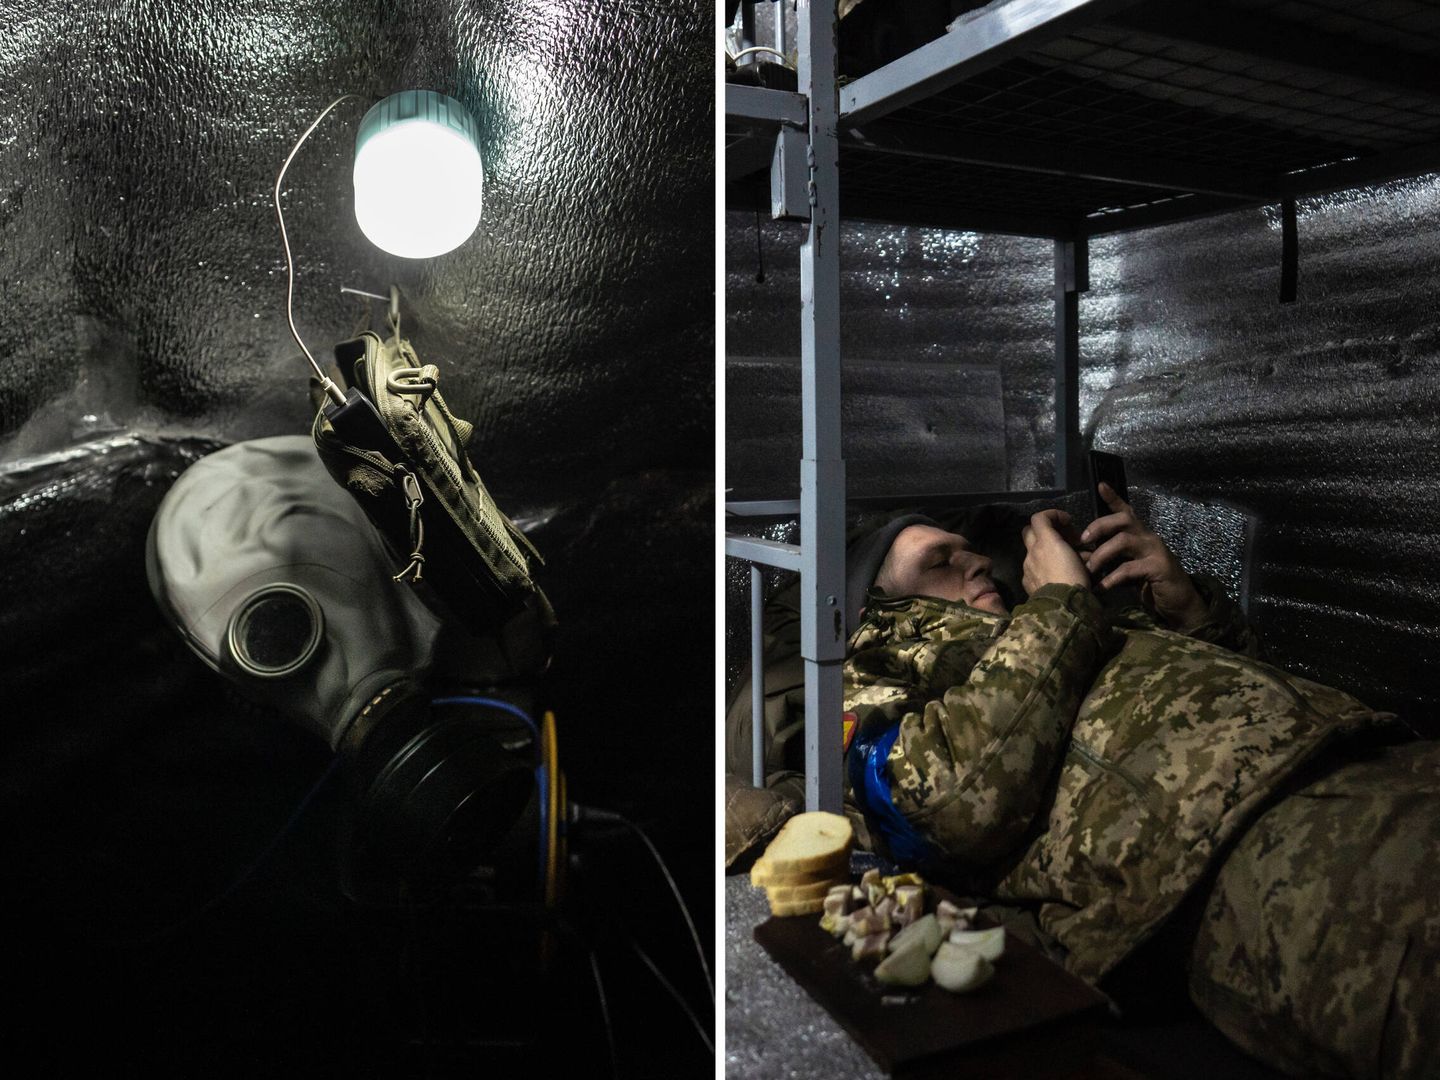 Bajo tierra el tiempo pasa lento. El acceso a internet gracias al Starlink ayuda a los soldados, que pueden hablar a diario con sus familias. En la primera línea no es raro encontrar también máscaras antigás (Fotos: Fermín Torrano)